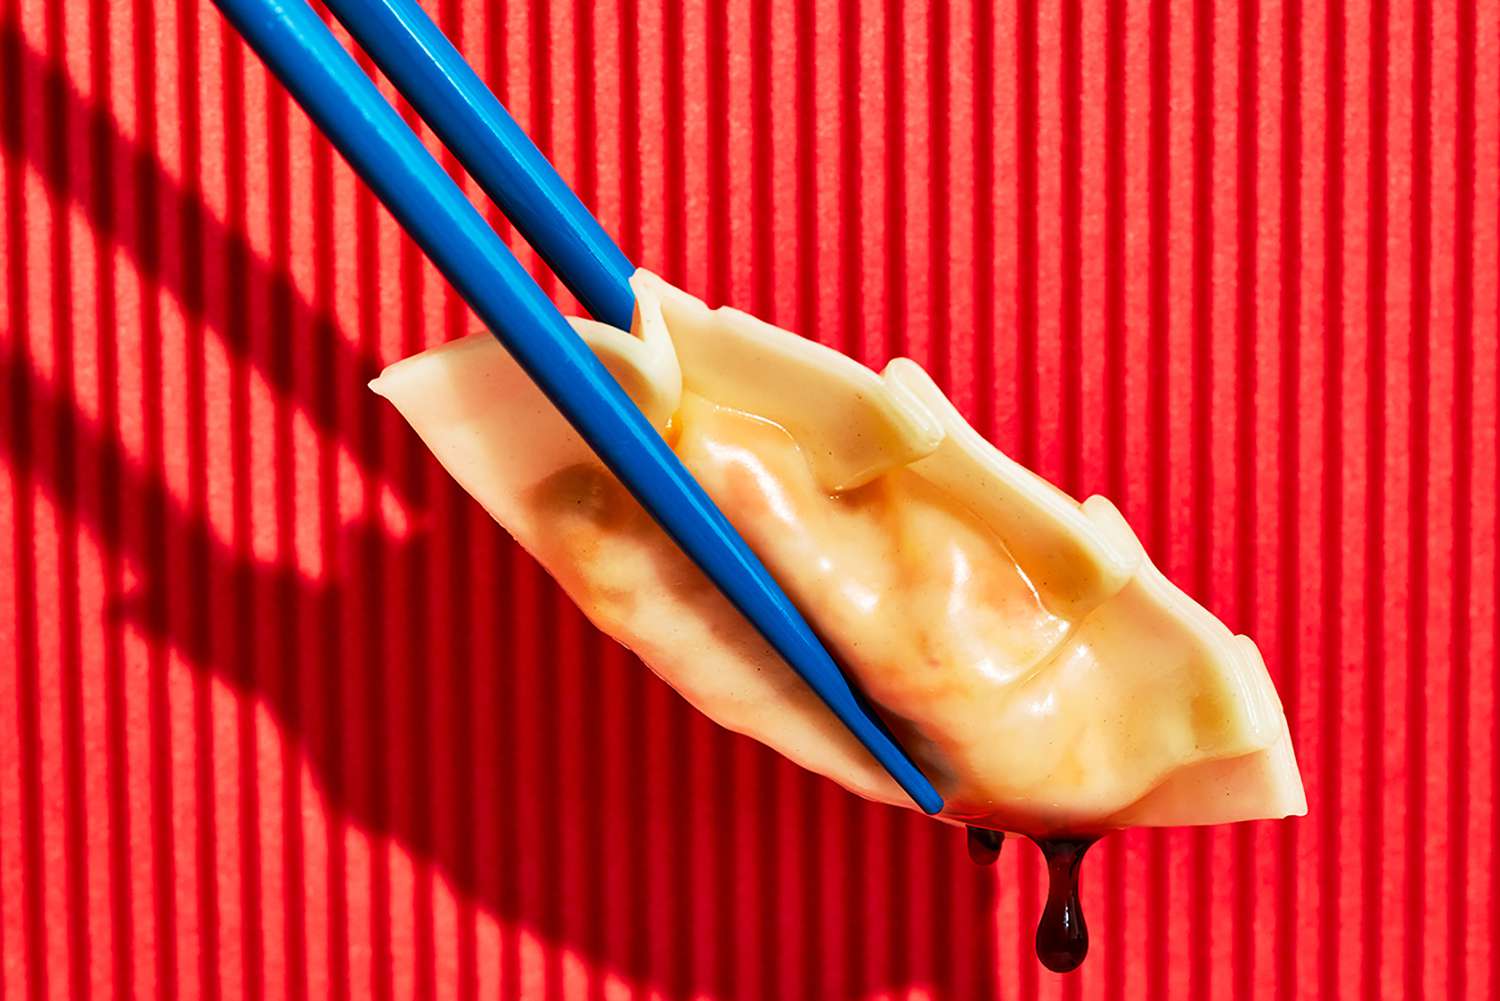 A dumpling being held by chopsticks